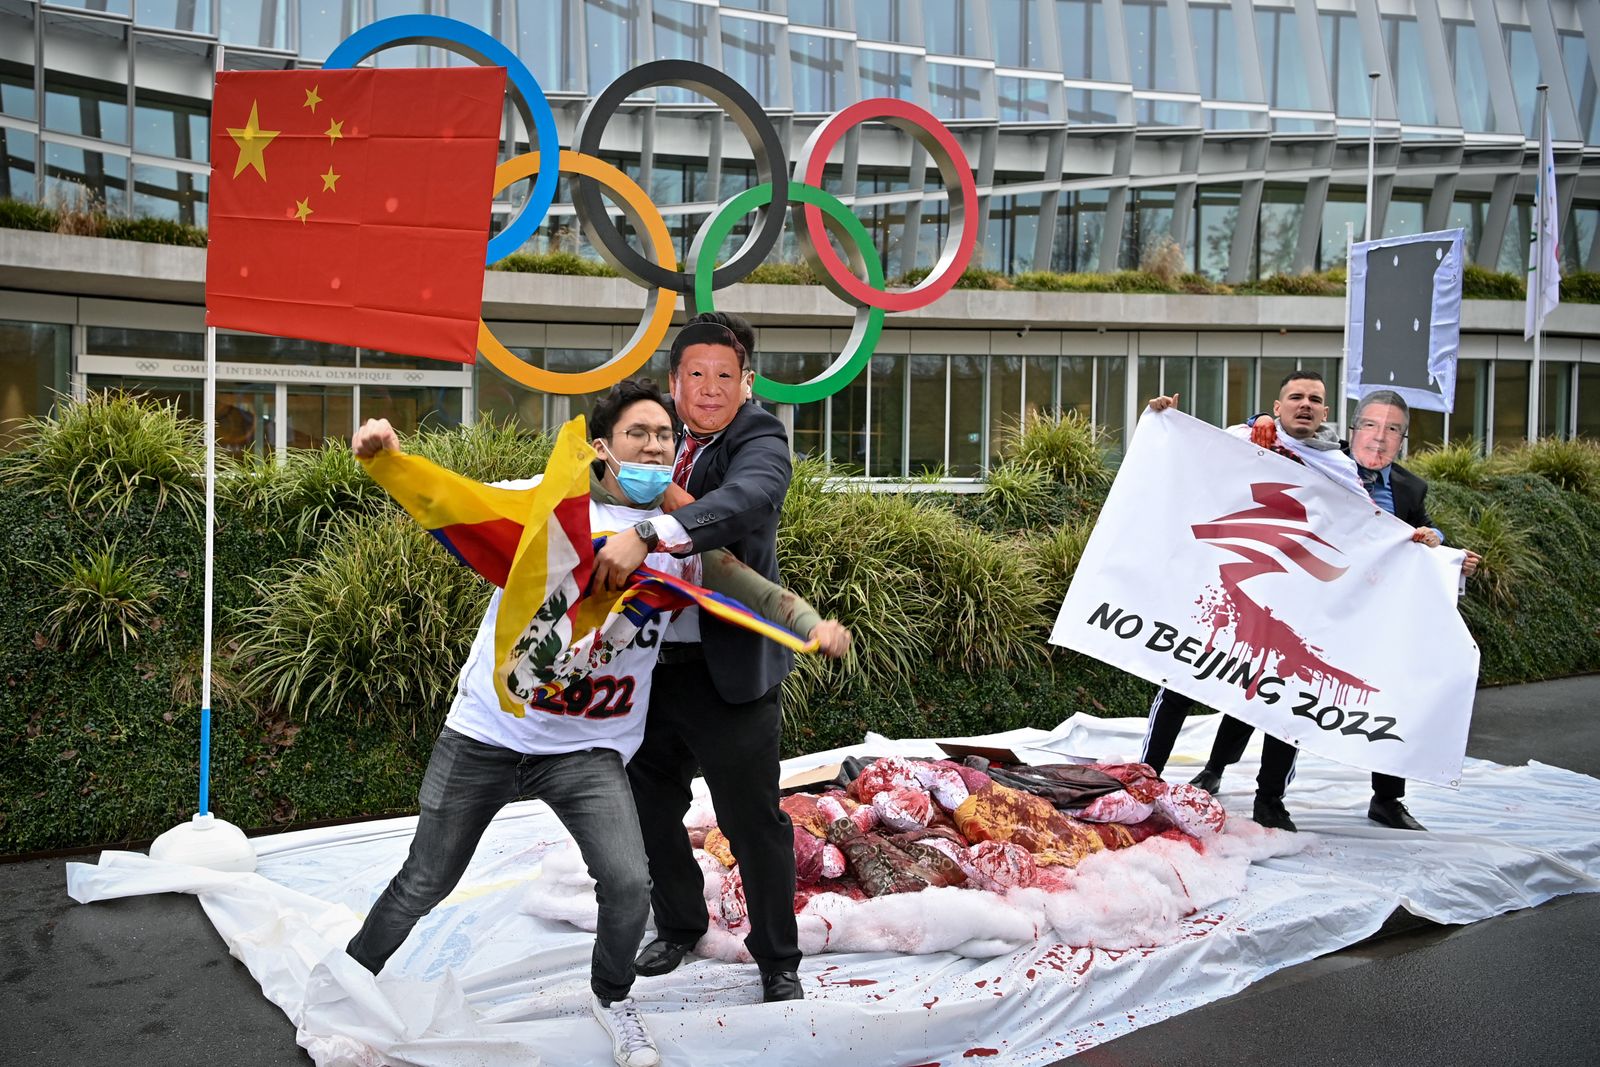 متظاهرون يرتدون أقنعة تحمل الرئيس الصيني ورئيس اللجنة الأولمبية الدولية أمام مقر اللجنة الأولمبية الدولية خلال احتجاج على الألعاب الأولمبية الشتوية في بكين 2022 نظمها نشطاء شبكة التبت الدولية في 3 فبراير 2021 في لوزان - AFP